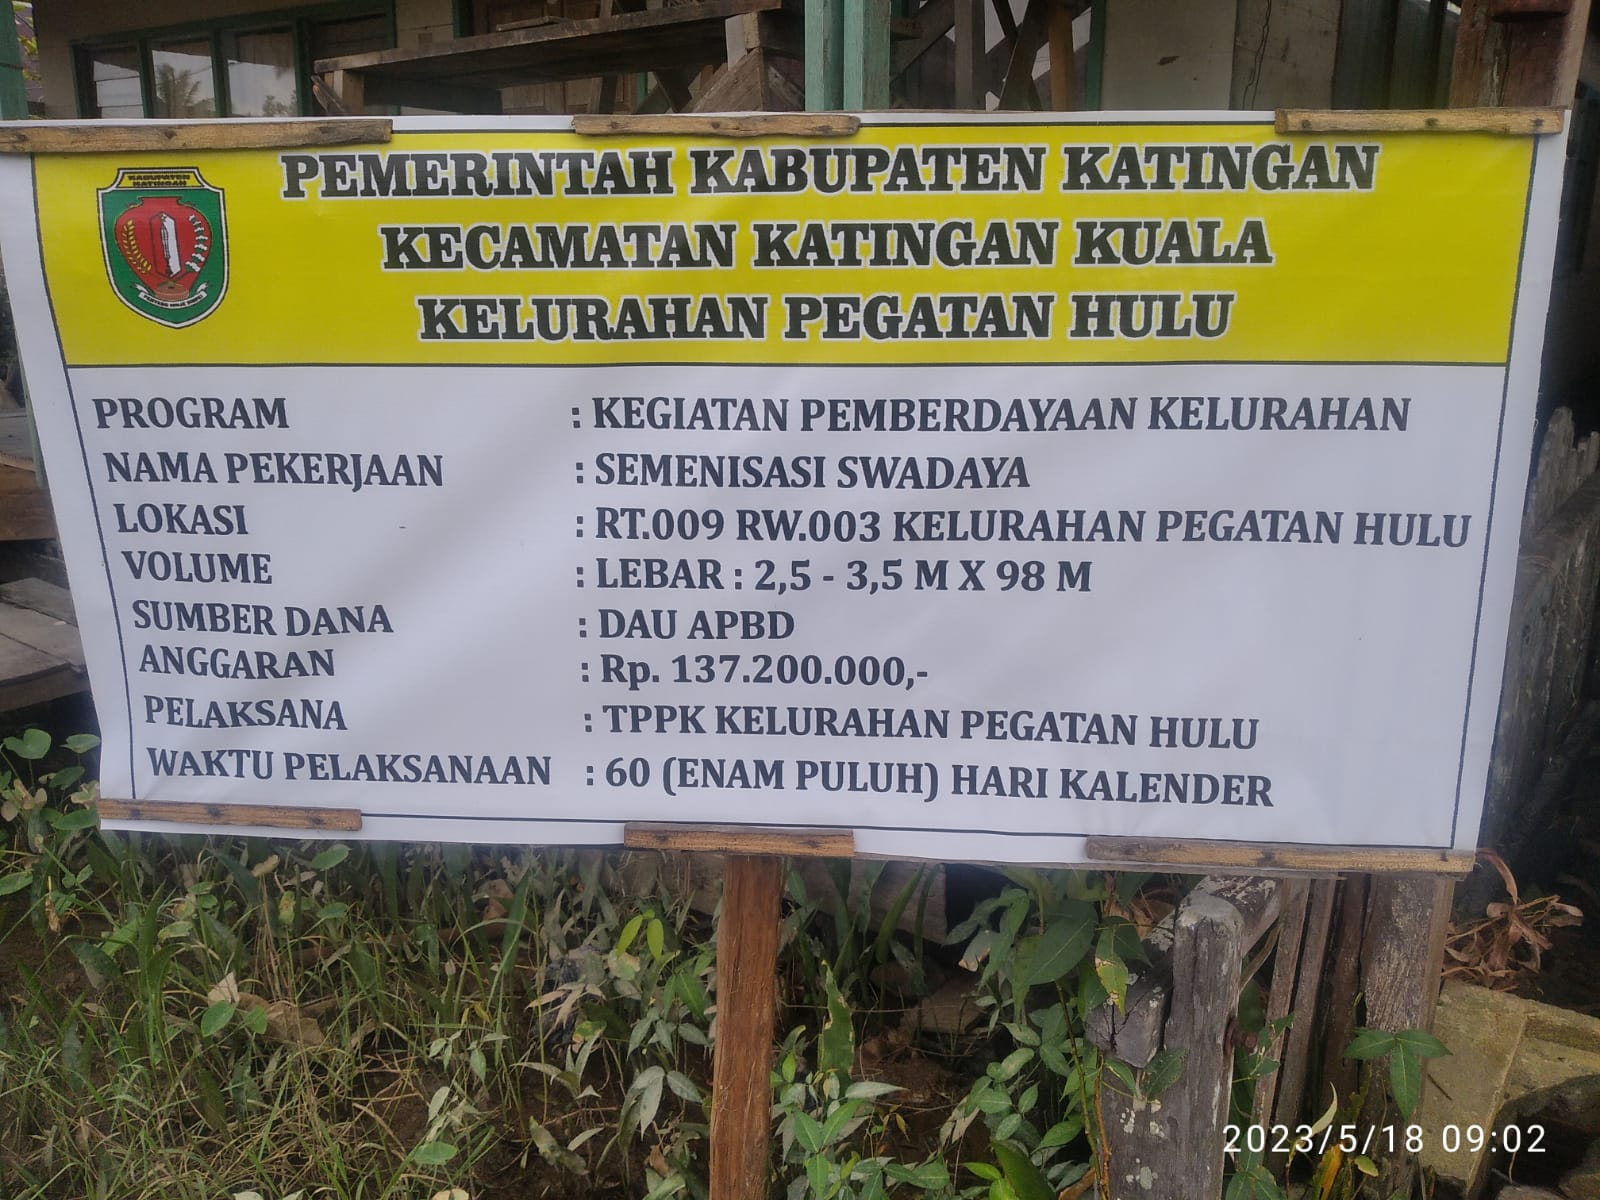 Proyek Seminisasi dan Pengaspalan  di Pegatan Hulu Kecamatan Katingan Kuala Kabupaten Katingan Telah Diselesaikan.